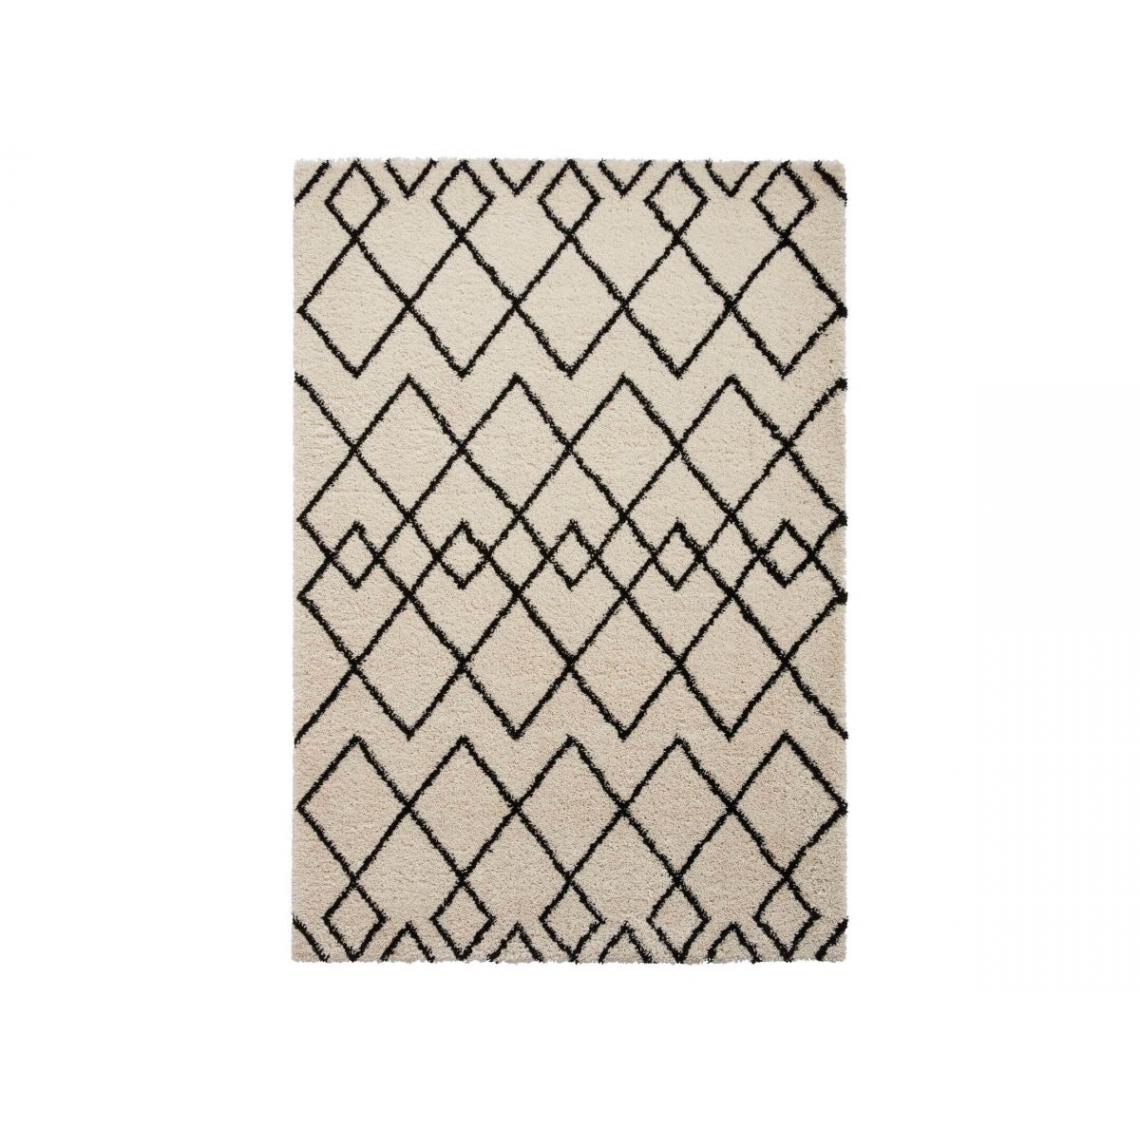 Bobochic - BOBOCHIC Tapis poil mi-long rectangulaire AMELIA motif graphique Noir + Blanc 120x170 - Tapis